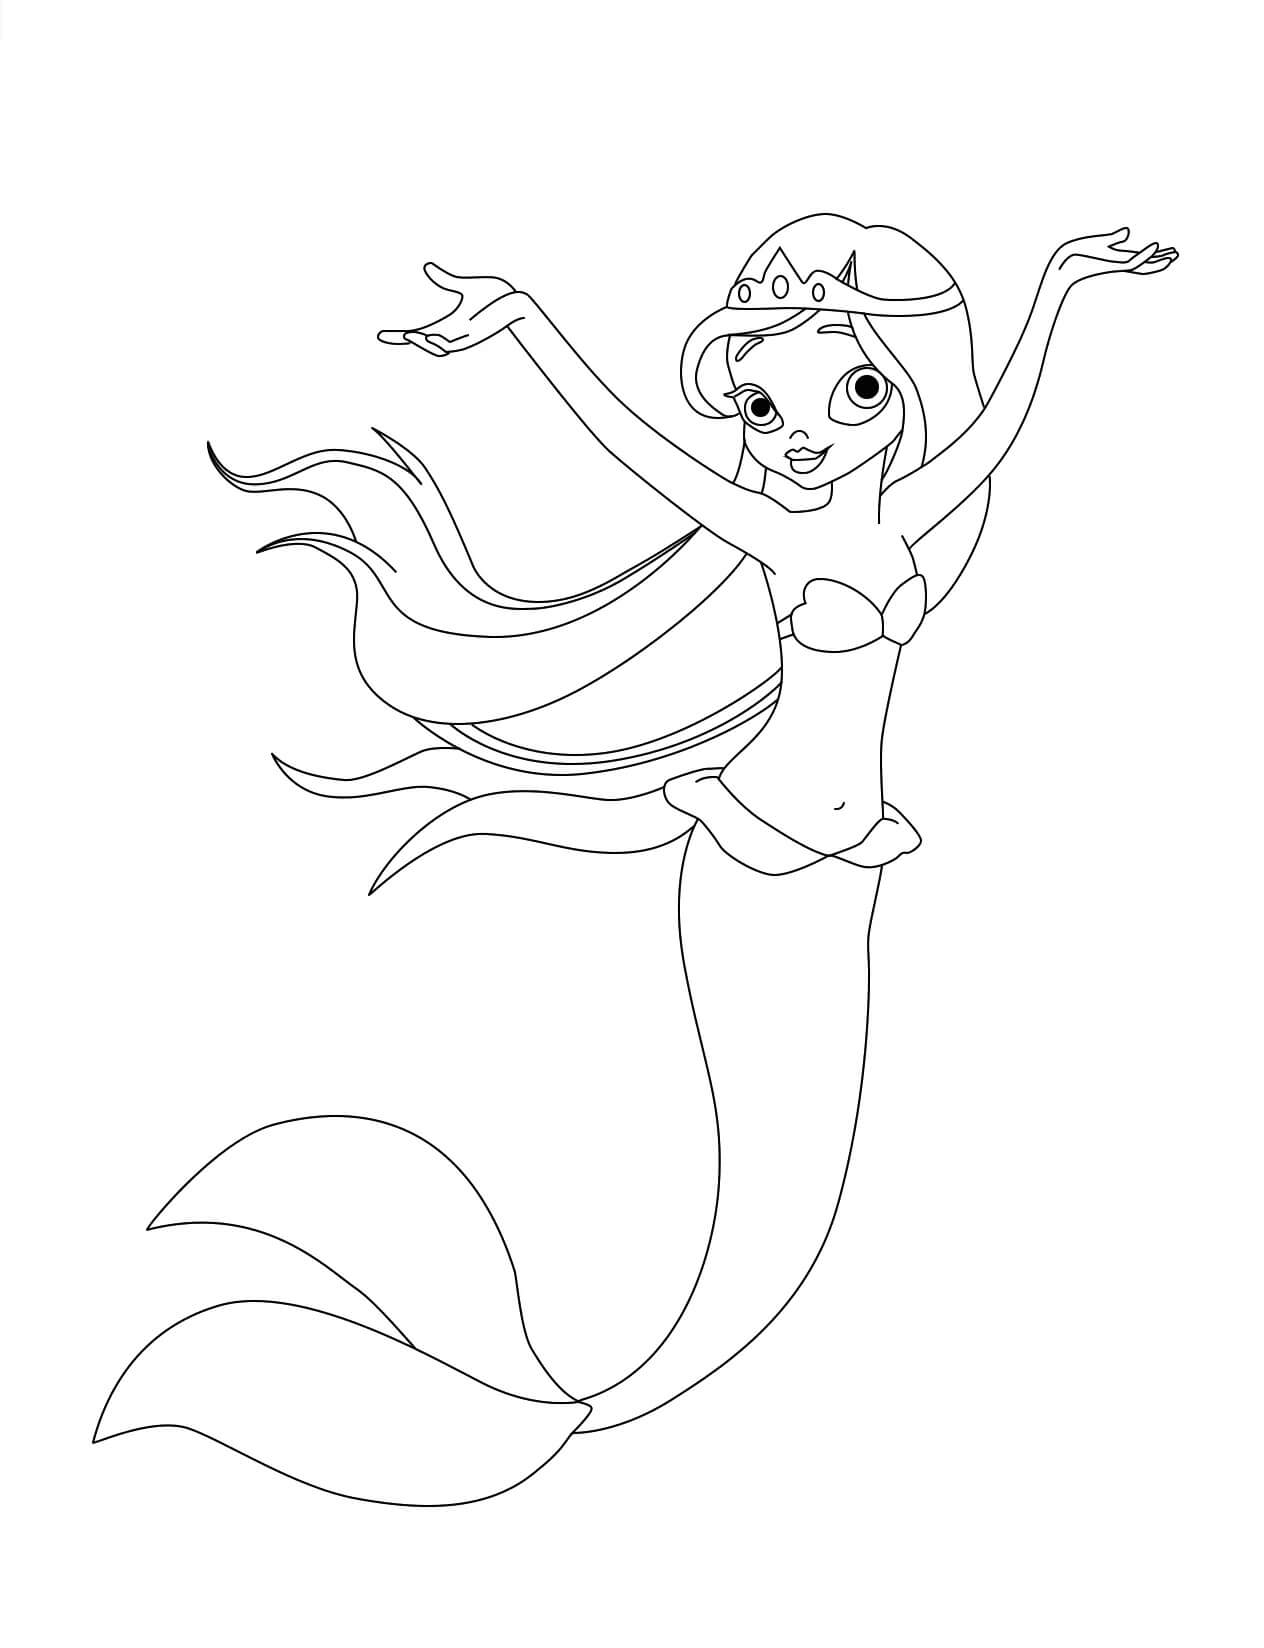 Een gelukkige zeemeerminprinses